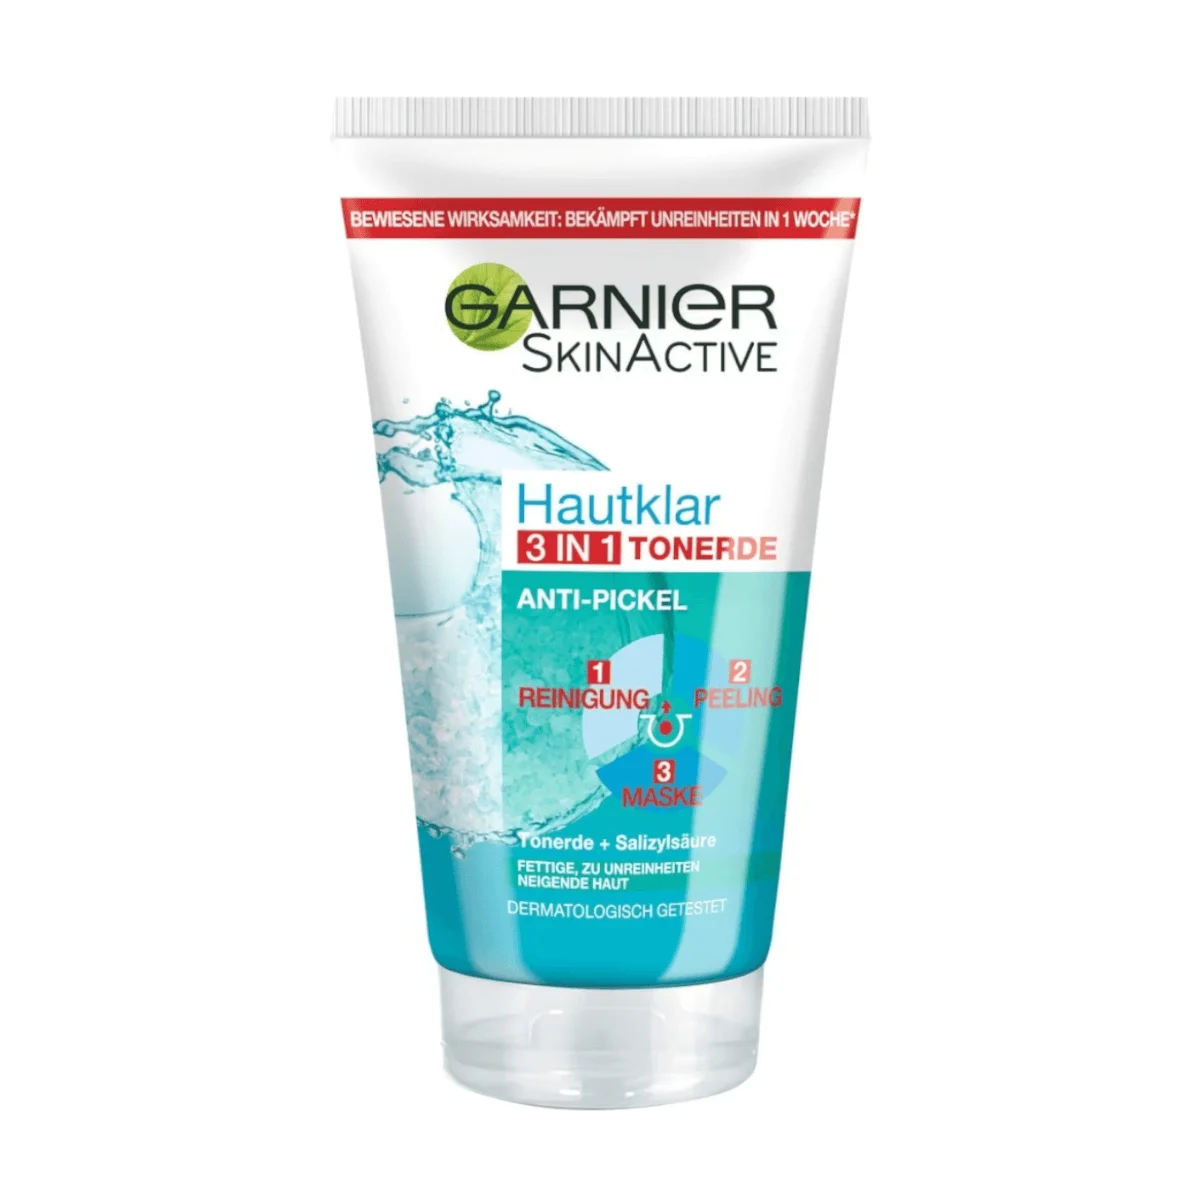 Garnier Skin Active Reinigungscreme Hautklar 3in1